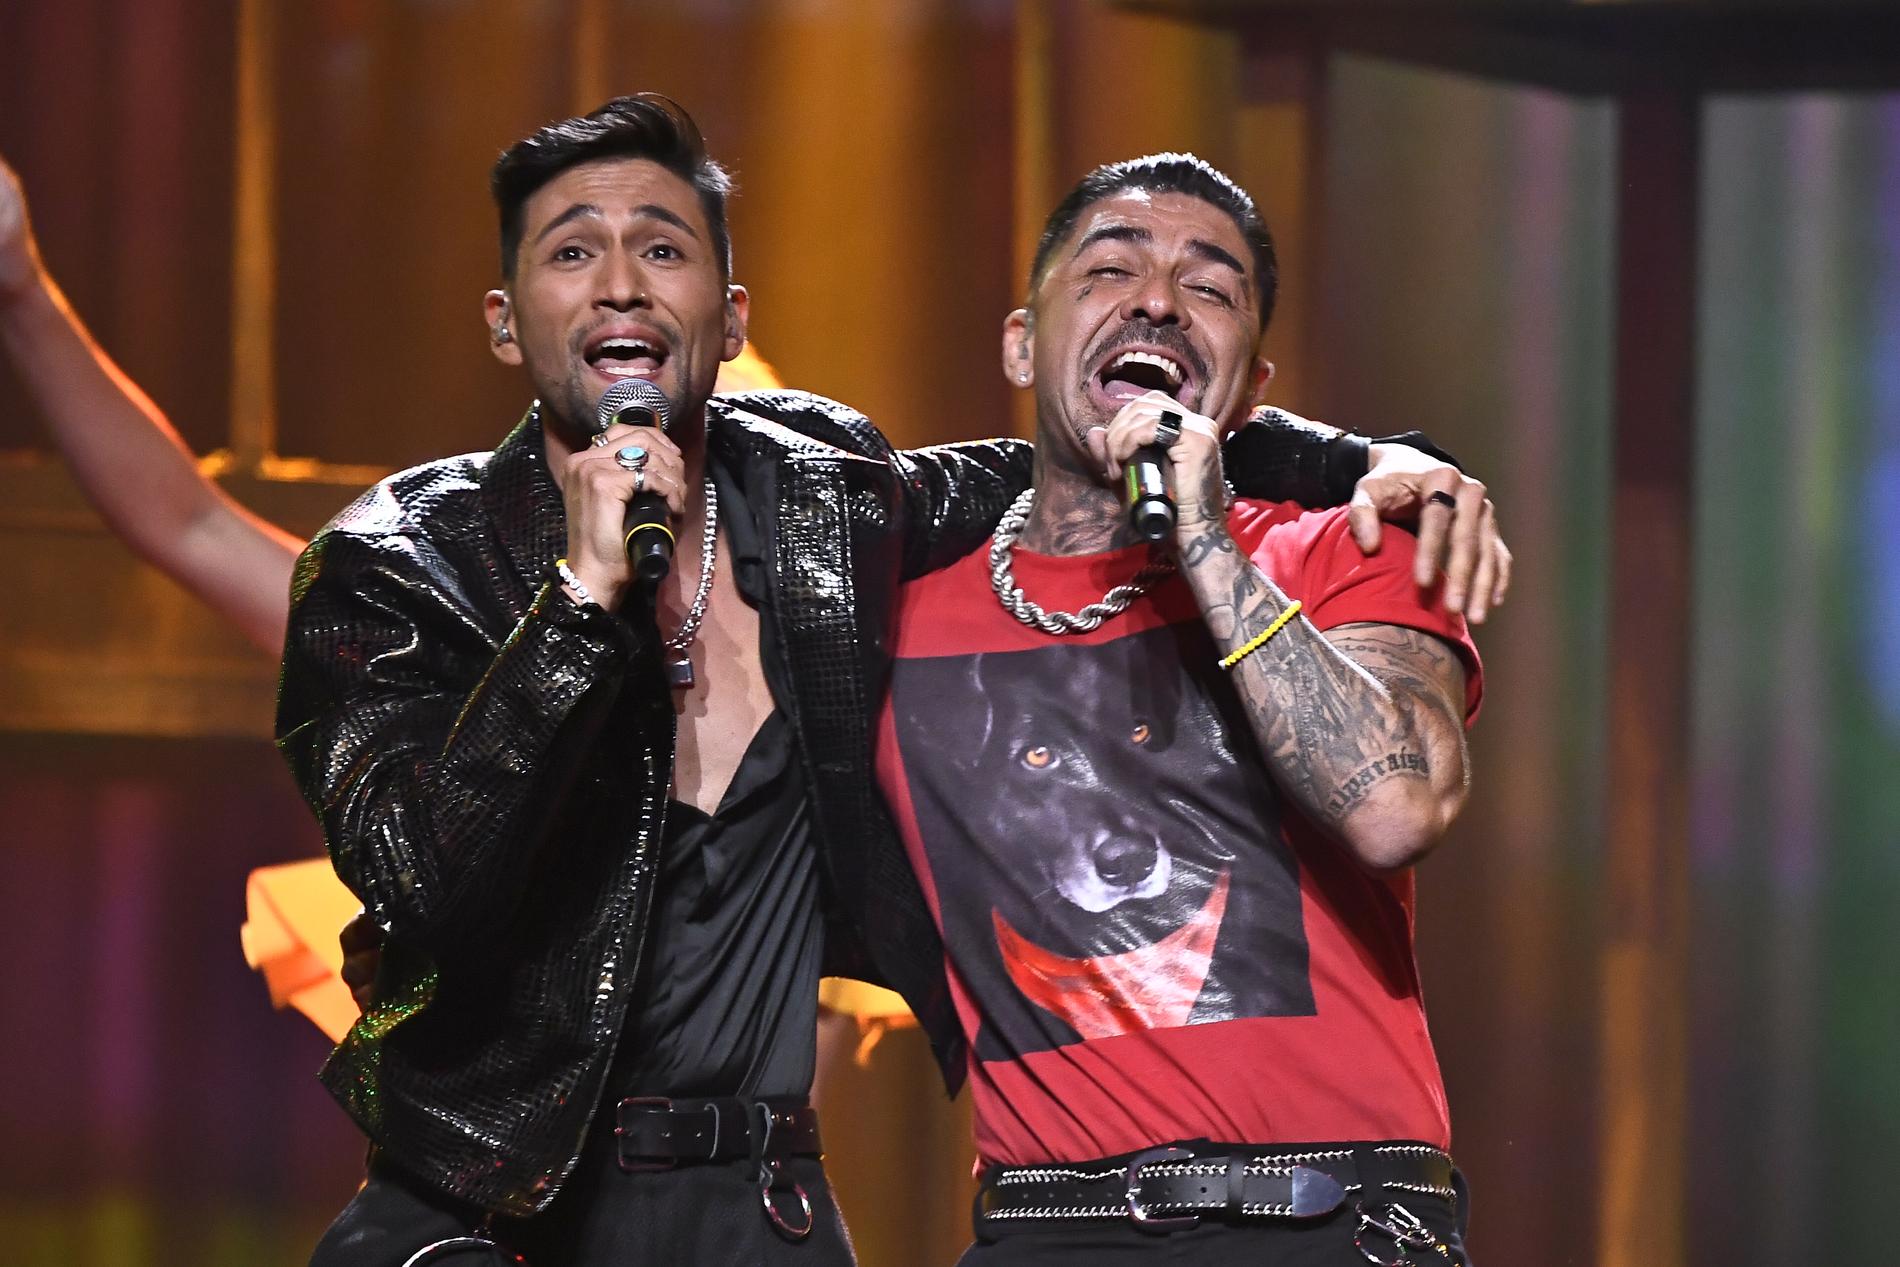 Mendez och Alvaro Estrella framför sitt bidrag "Vamos amigos". Det blir en andra chans för duon.